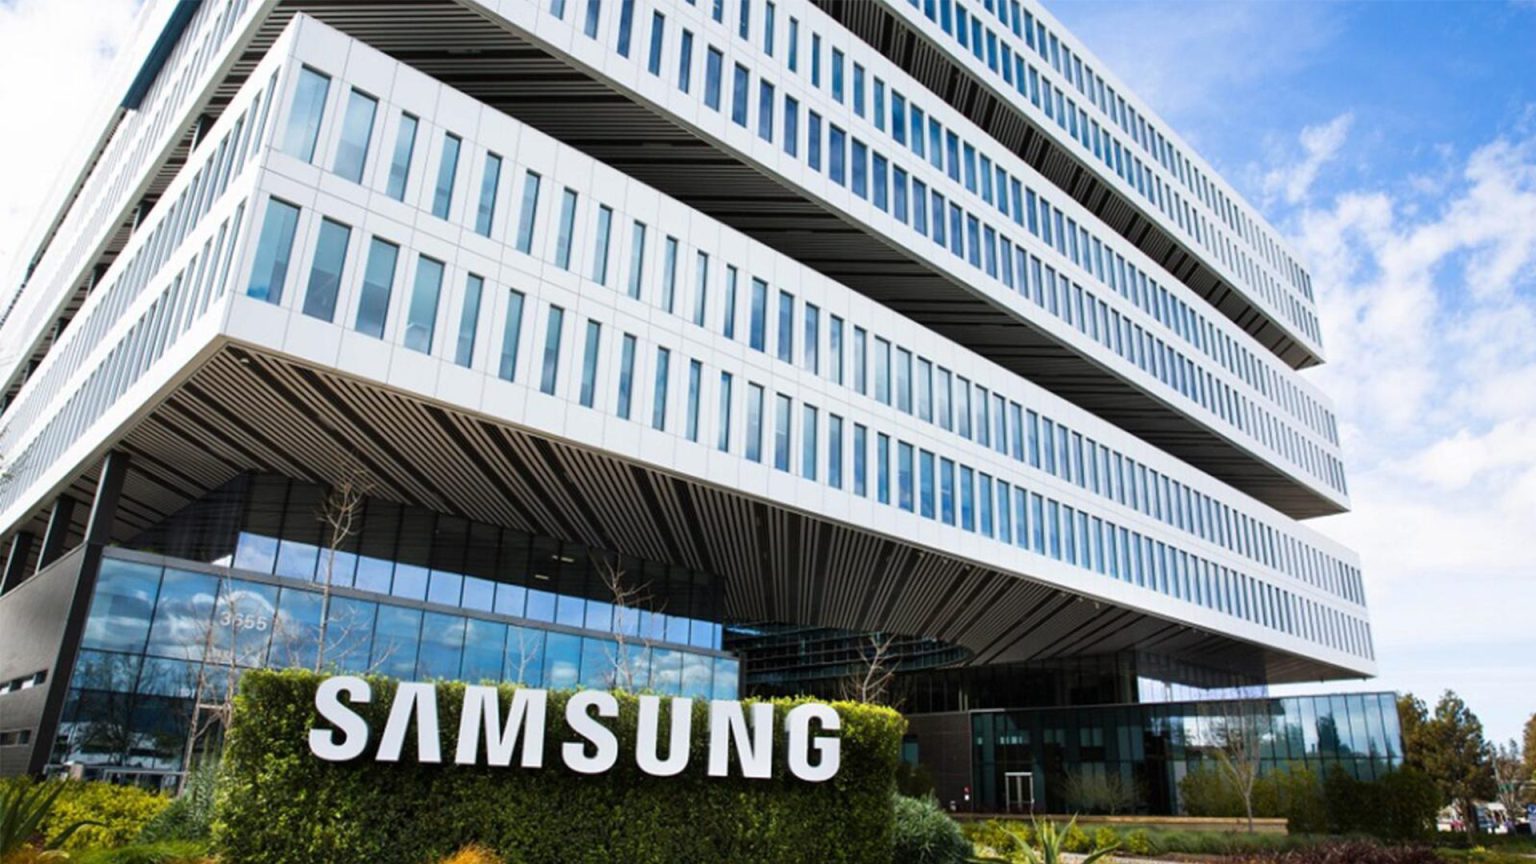 Fabrica Samsung - Portada